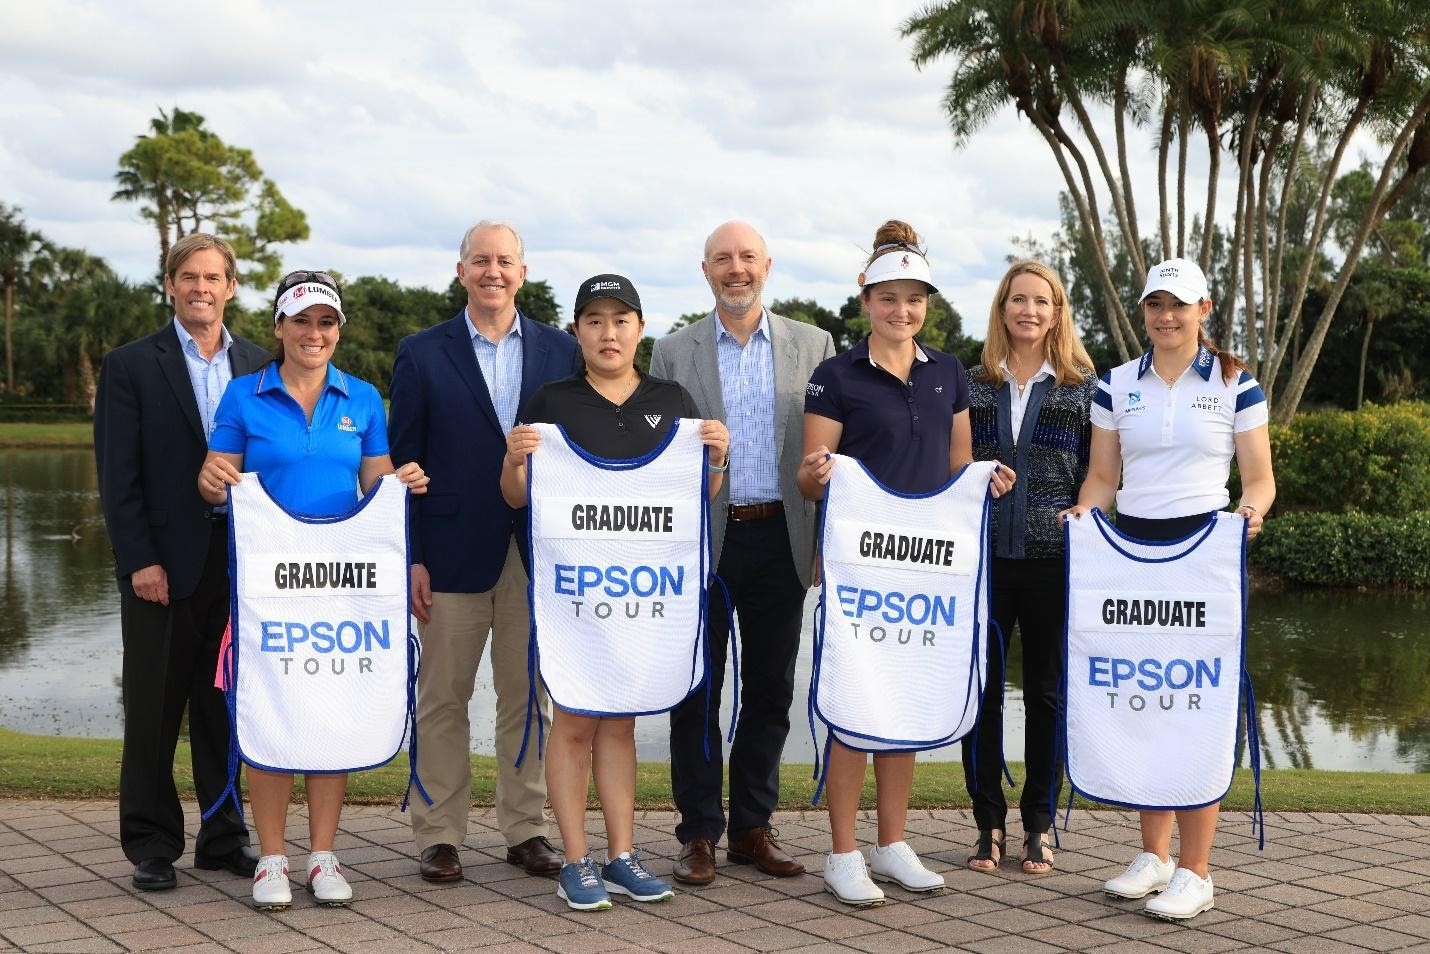 Epson nuevo patrocinador oficial del Tour LPGA